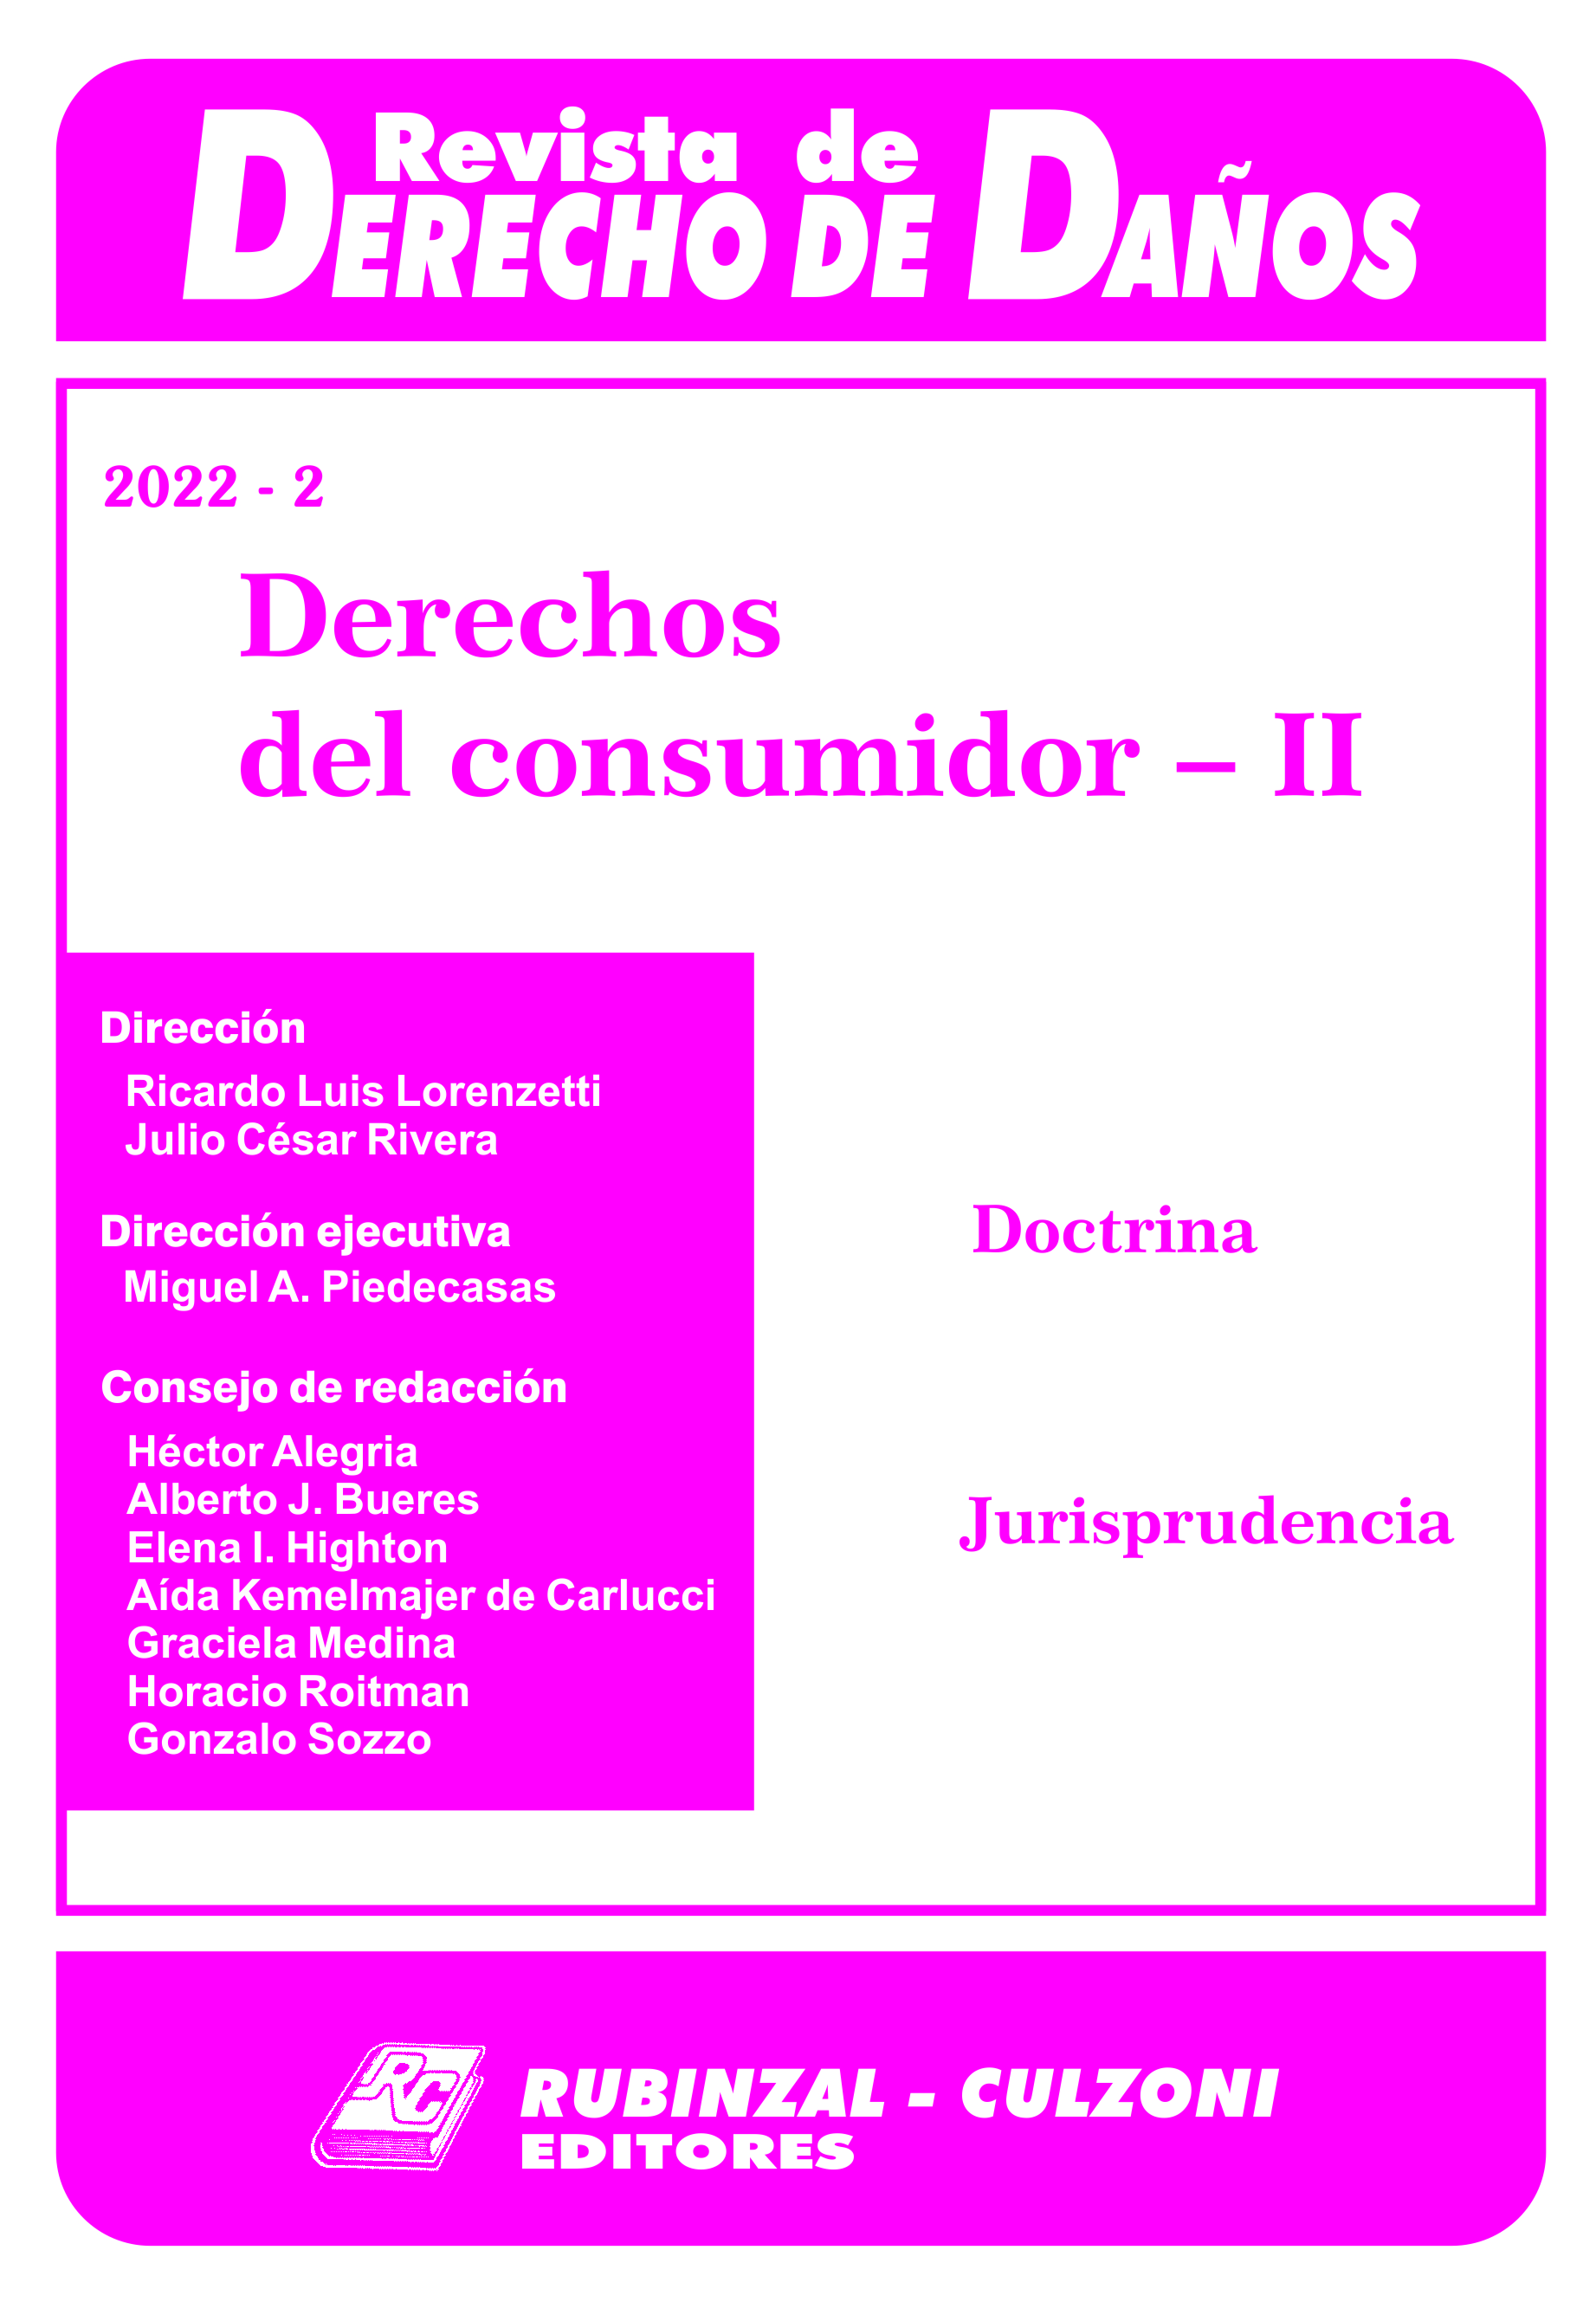 Revista de Derecho de Daños - Derechos del consumidor - II